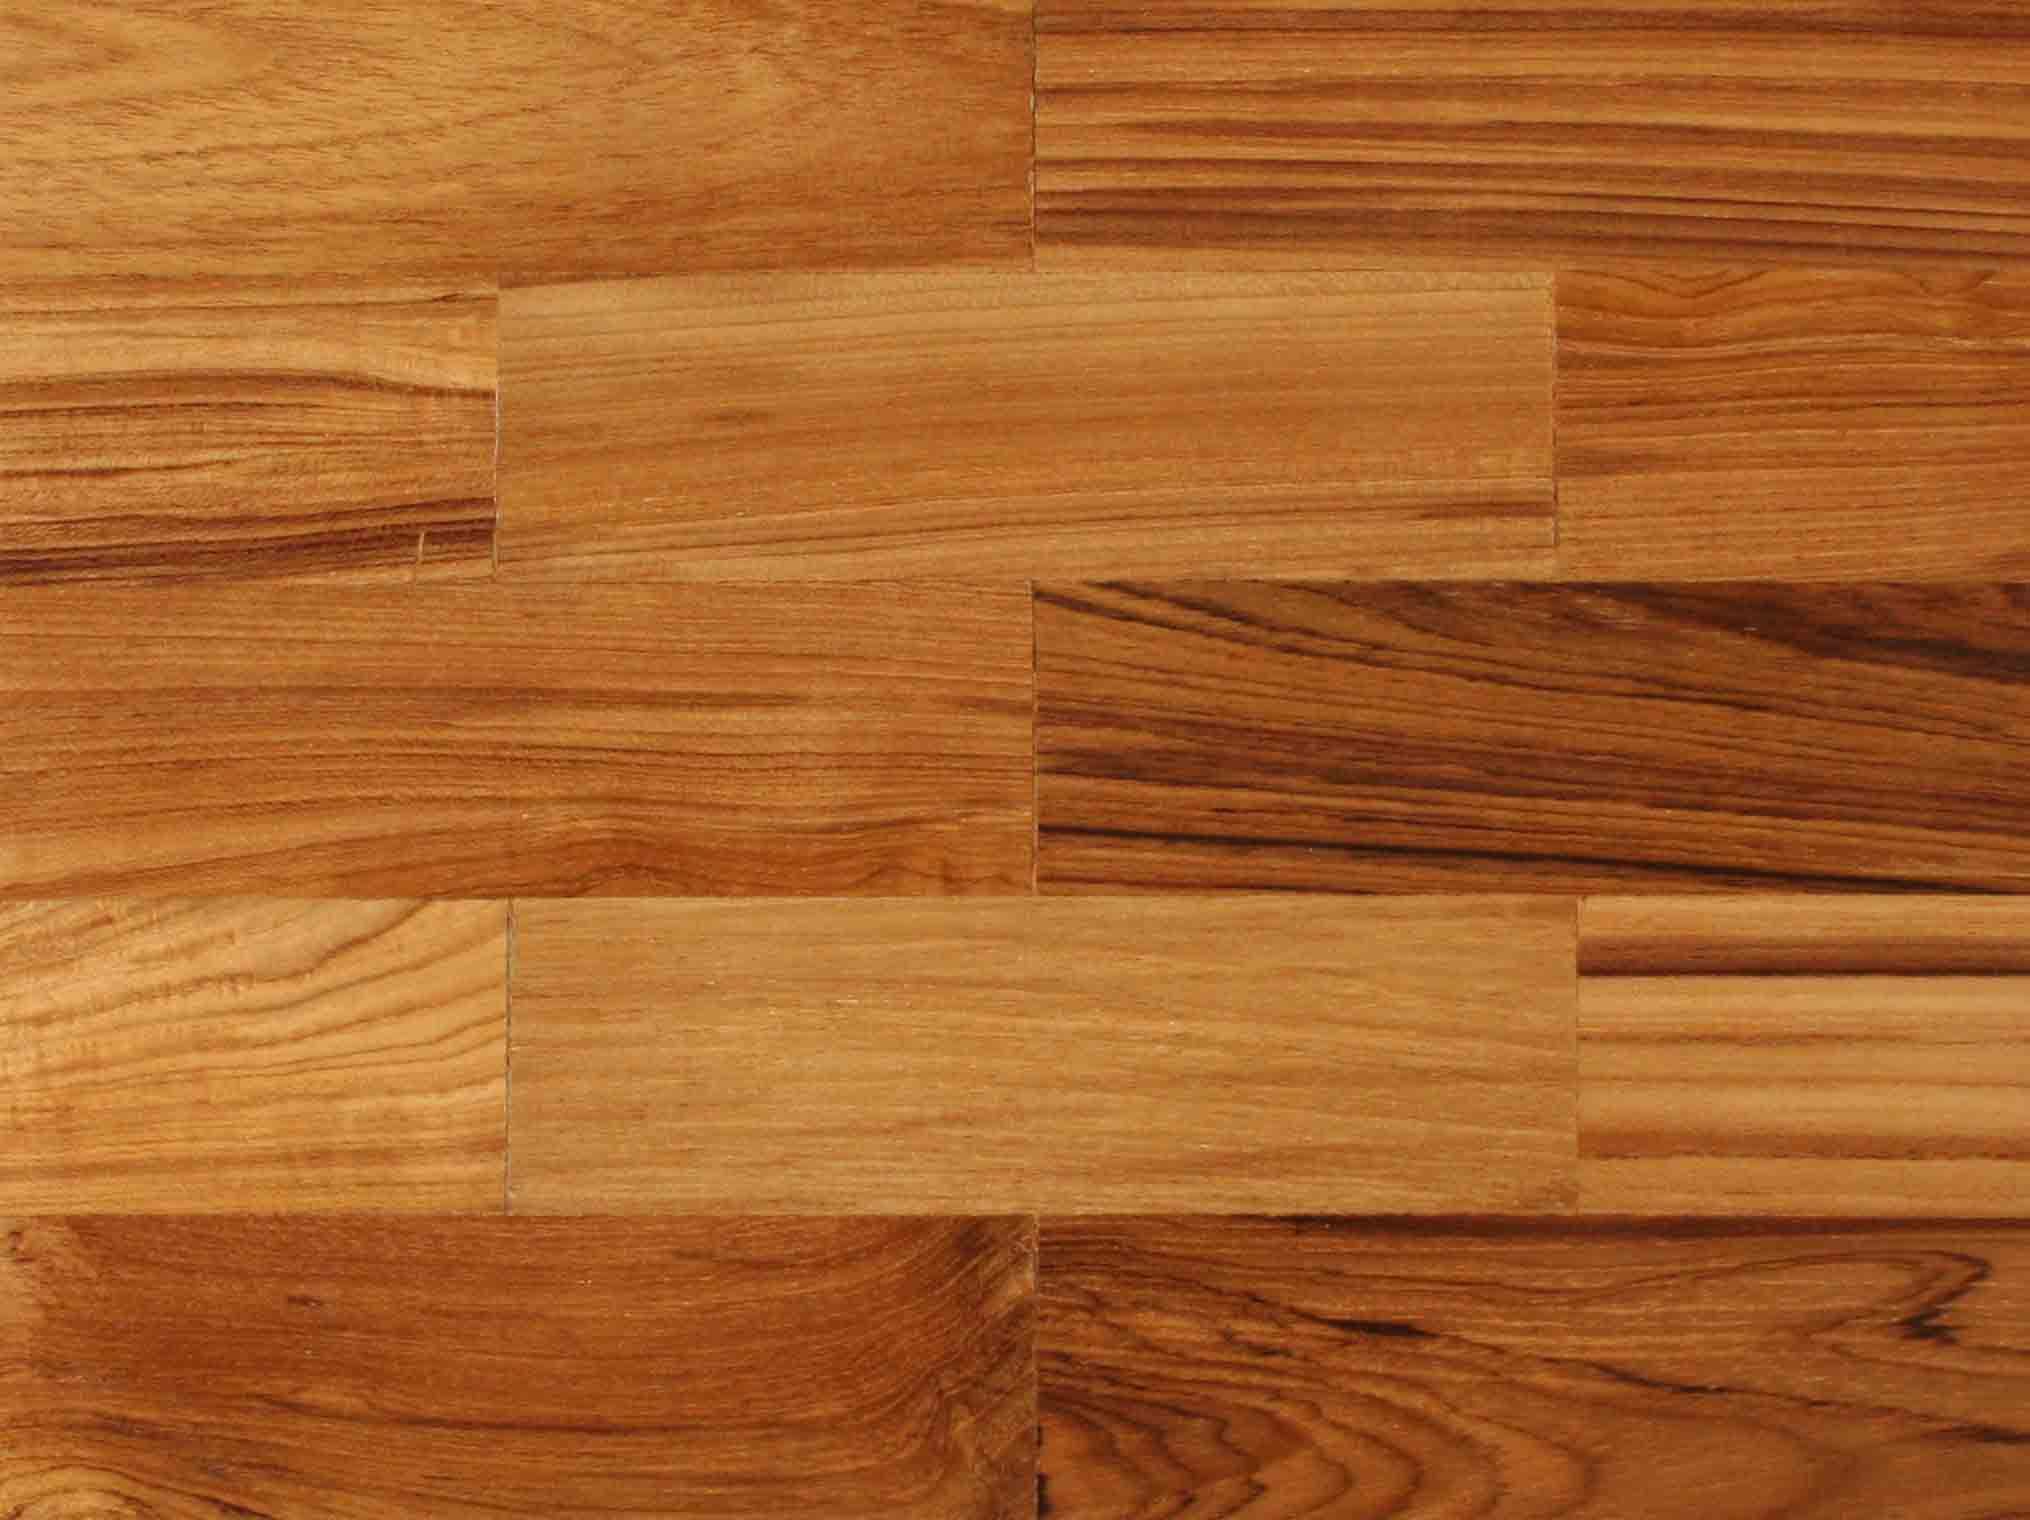 Wistha Teek & Rose Wood Wooden Flooring - Buy Wooden Flooring ...